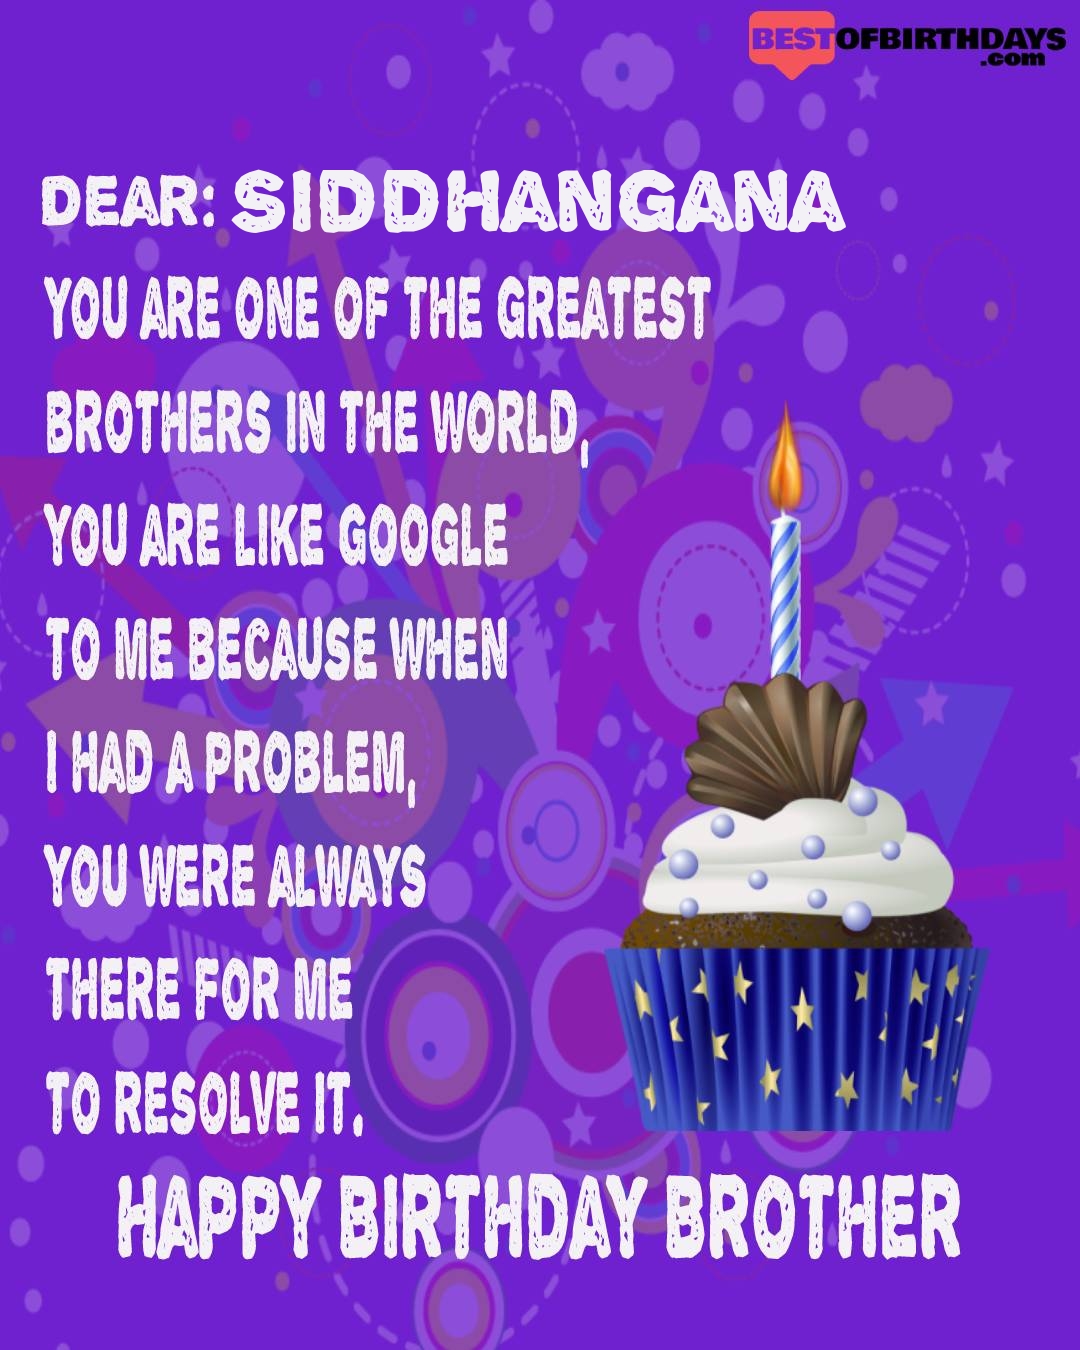 Happy birthday siddhangana bhai brother bro